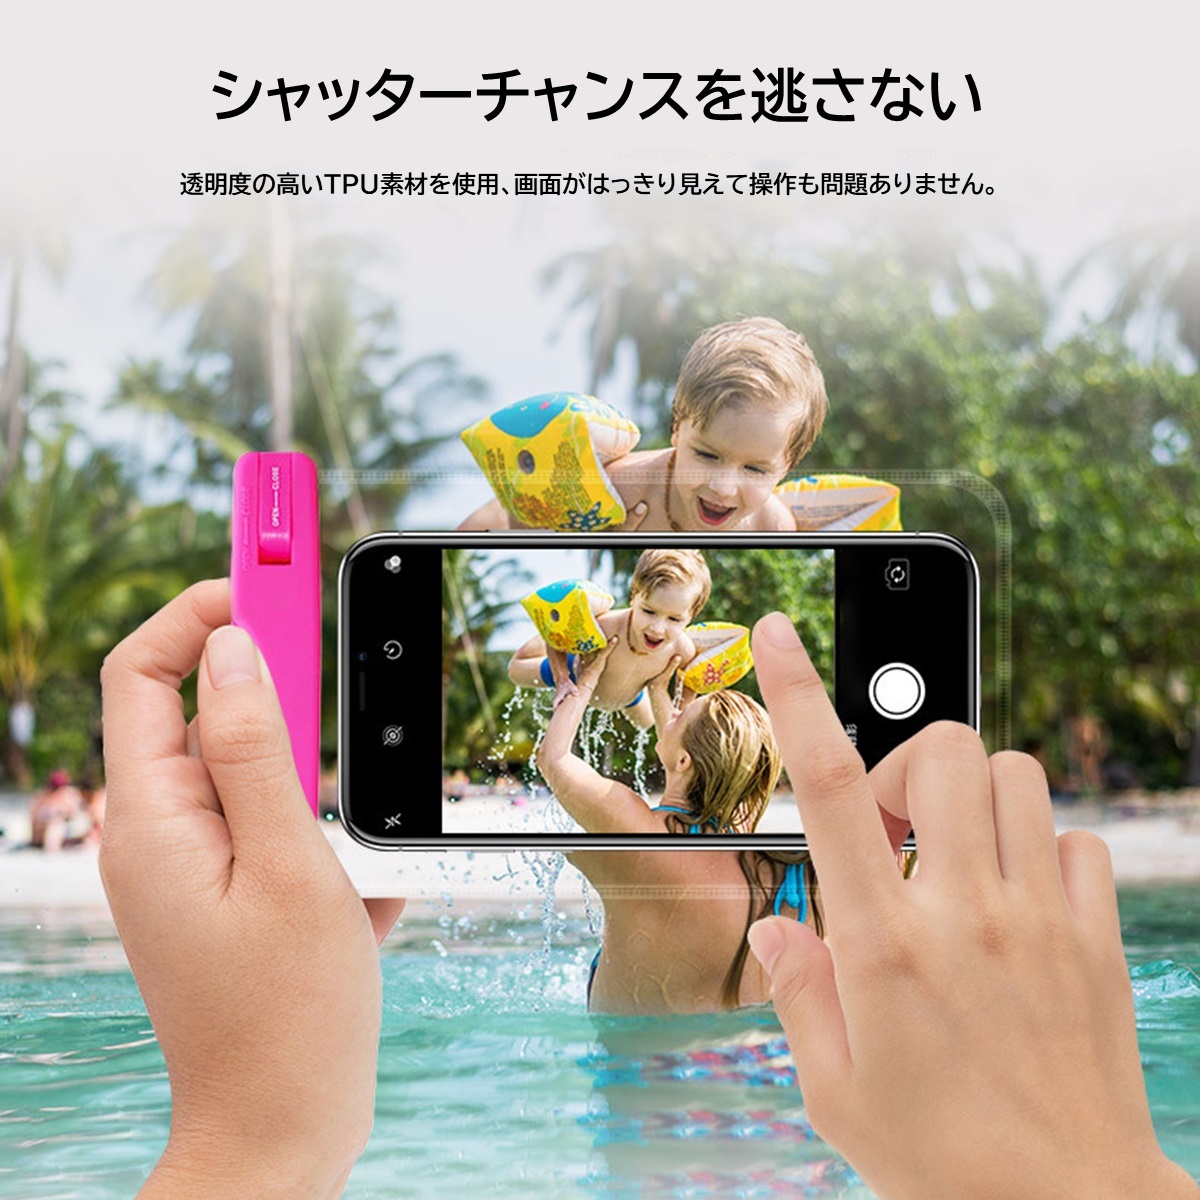 防水ケース 2個セット iphone スマホ IPX8防水 6.5インチ以下機種対応 指紋 Face ID認証 ネックストラップ&アームバンド付き 完全防水 水中撮影 海水浴